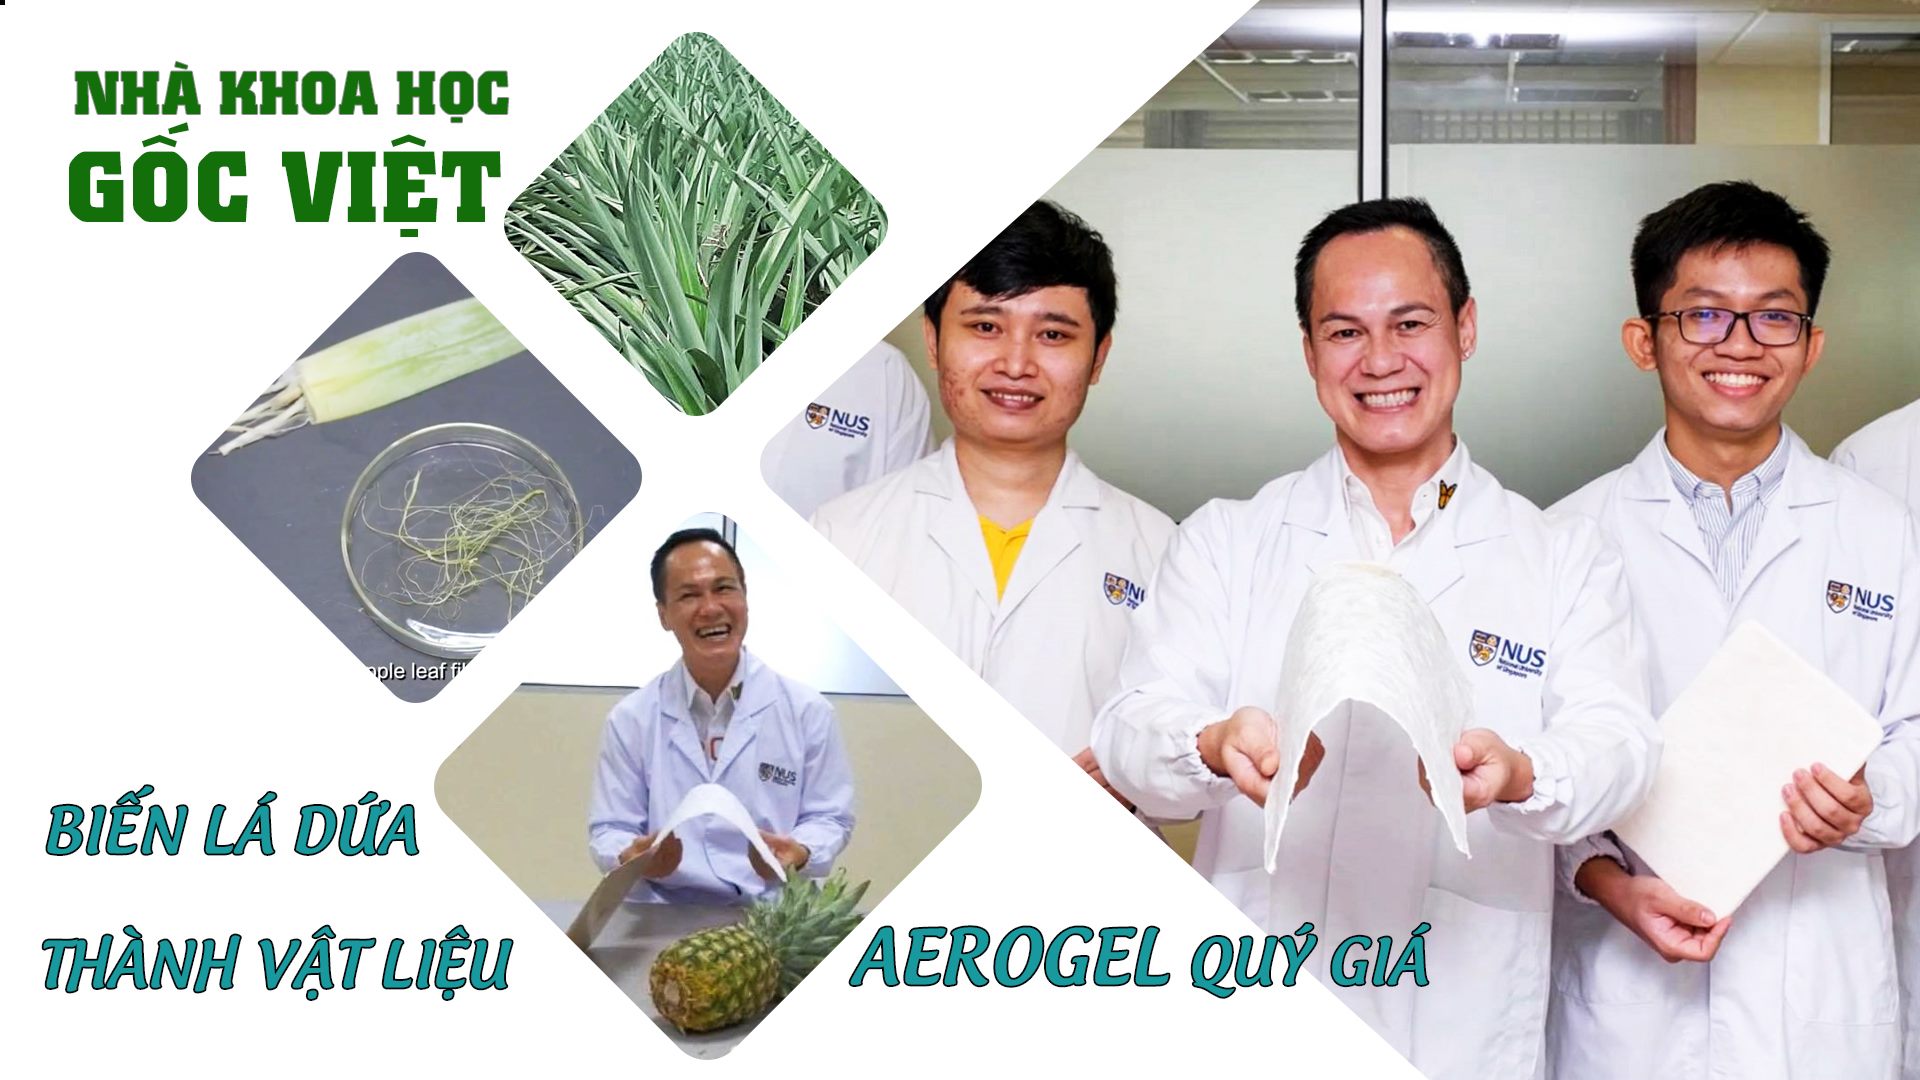 Nhà khoa học gốc Việt biến lá dứa thành vật liệu AEROGEL quý gia